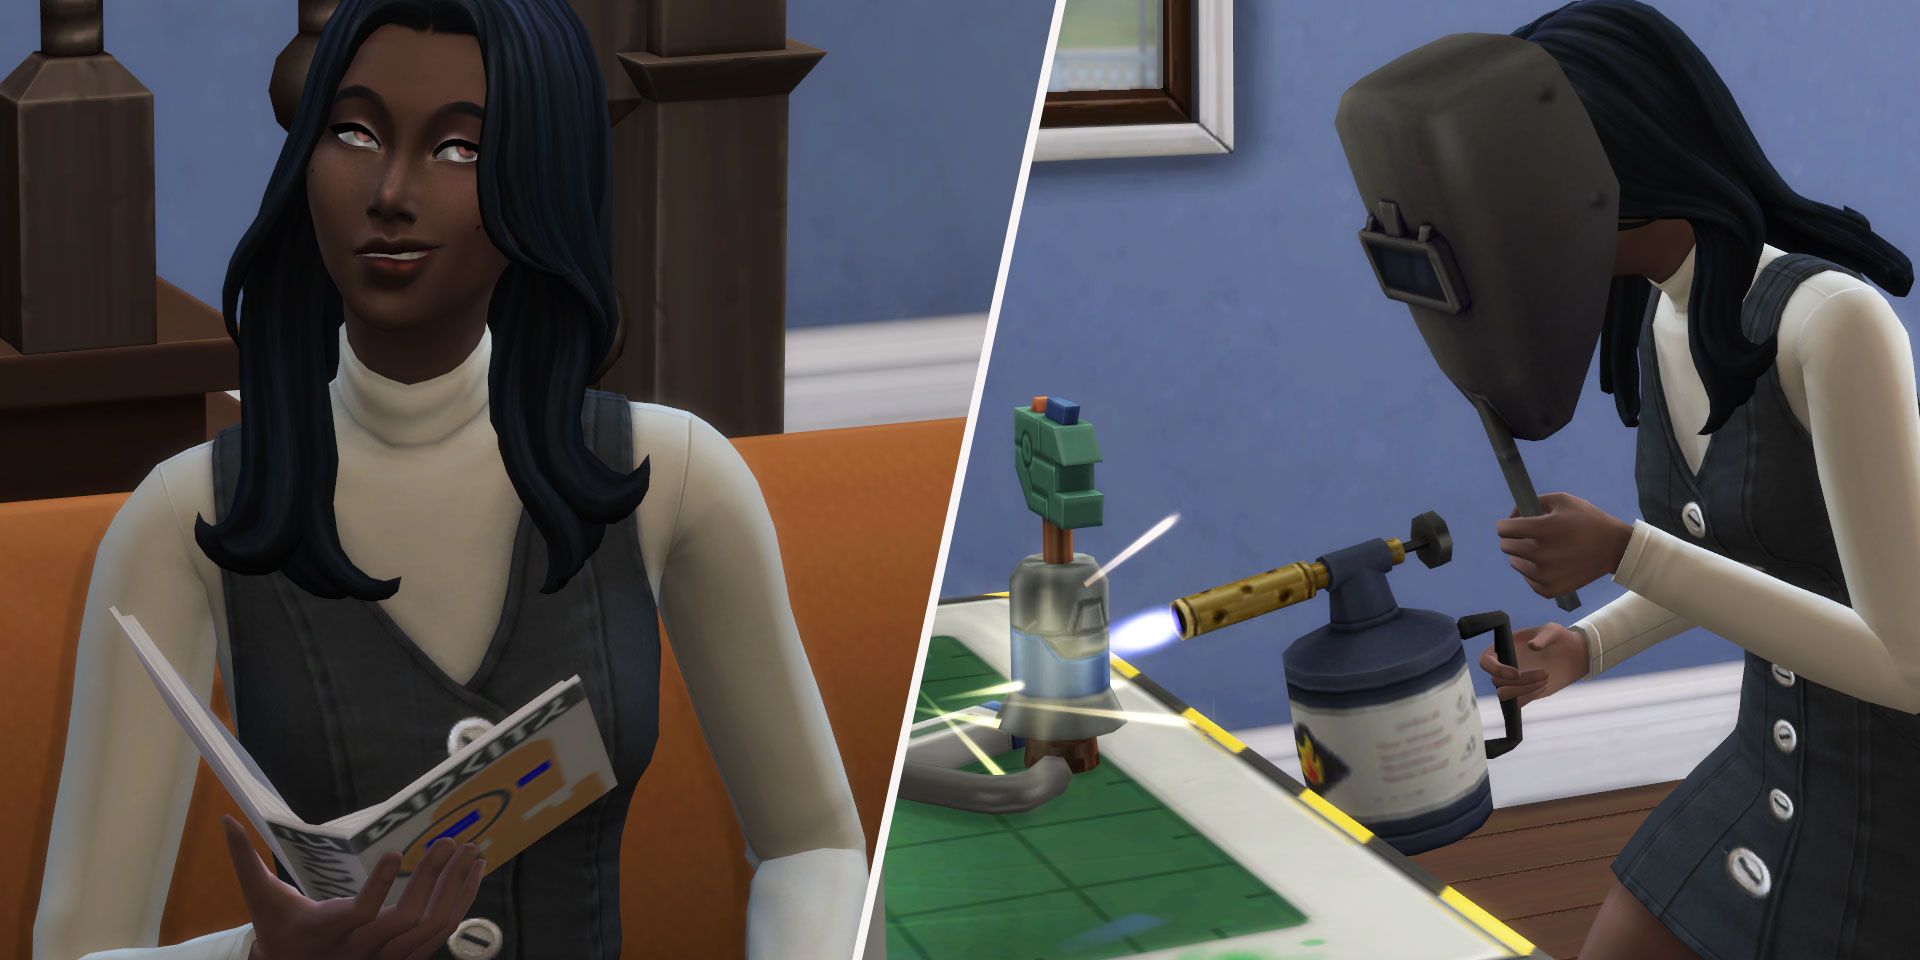 Ein in zwei Teile geteiltes Bild, das zwei Szenen in Die Sims 4 zeigt. Auf der linken Seite ist eine Sim-Frau zu sehen, die selbstgefällig lächelt und ein Buch in der Hand hält.  Auf der rechten Seite schweißt dieselbe Sim-Frau mit einer Hand etwas, während sie mit der anderen Hand eine Schweißmaske vor ihr Gesicht hält.